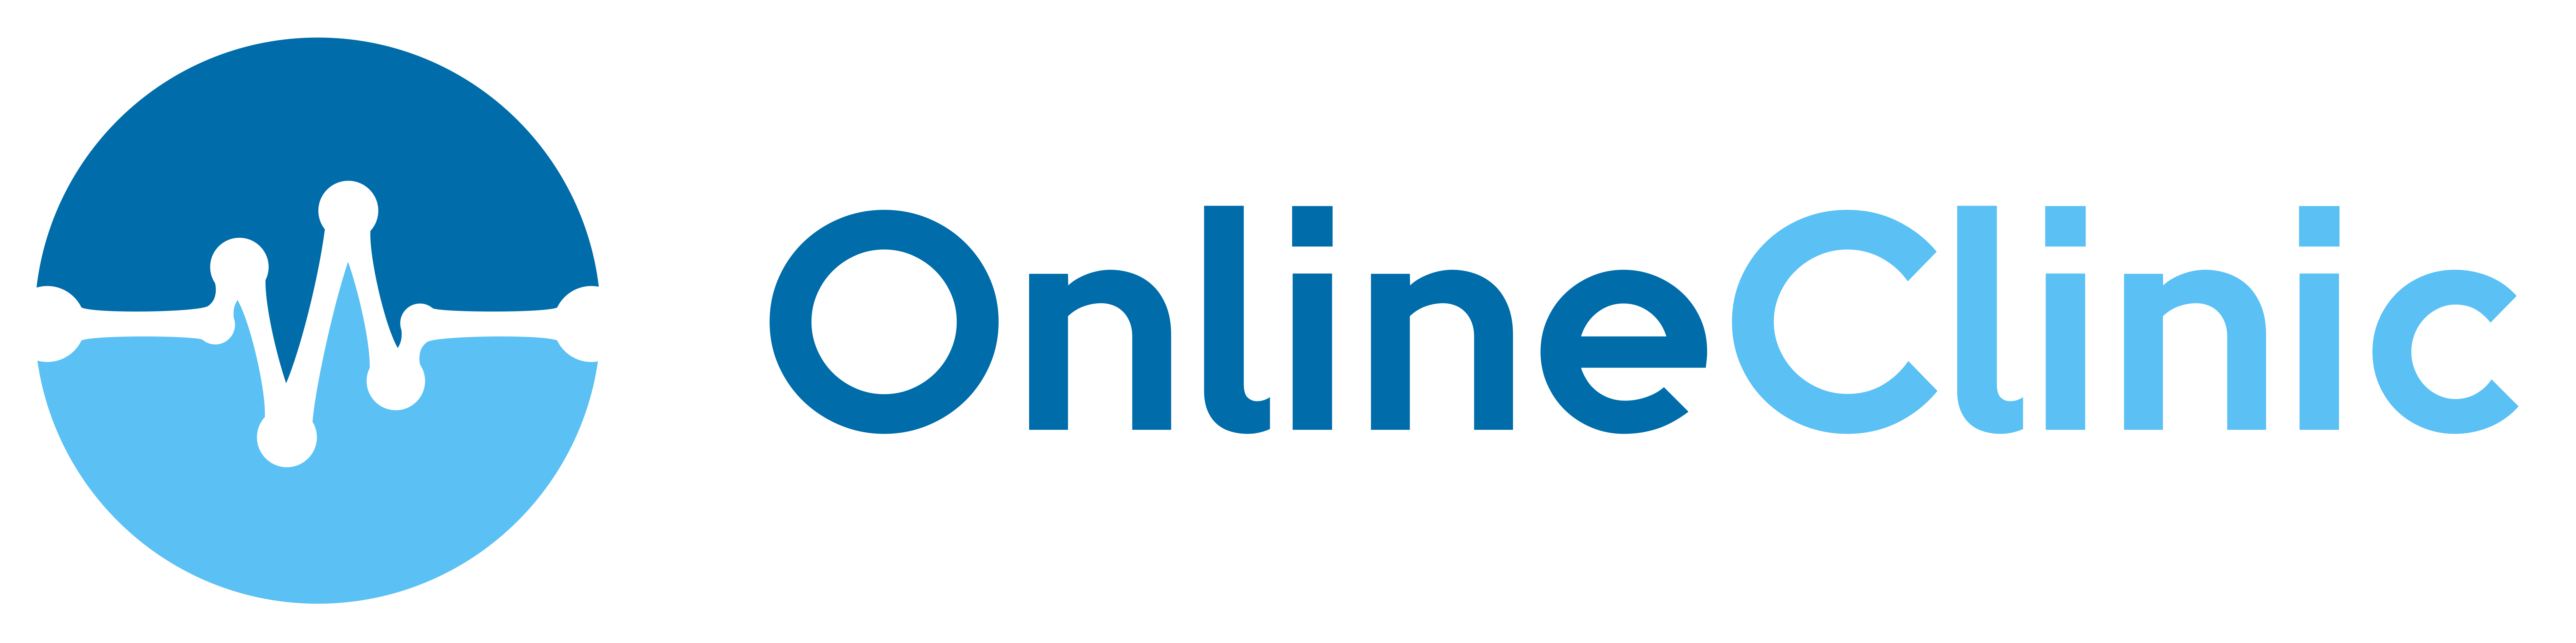 logo_online_clinic_alta_qualidade